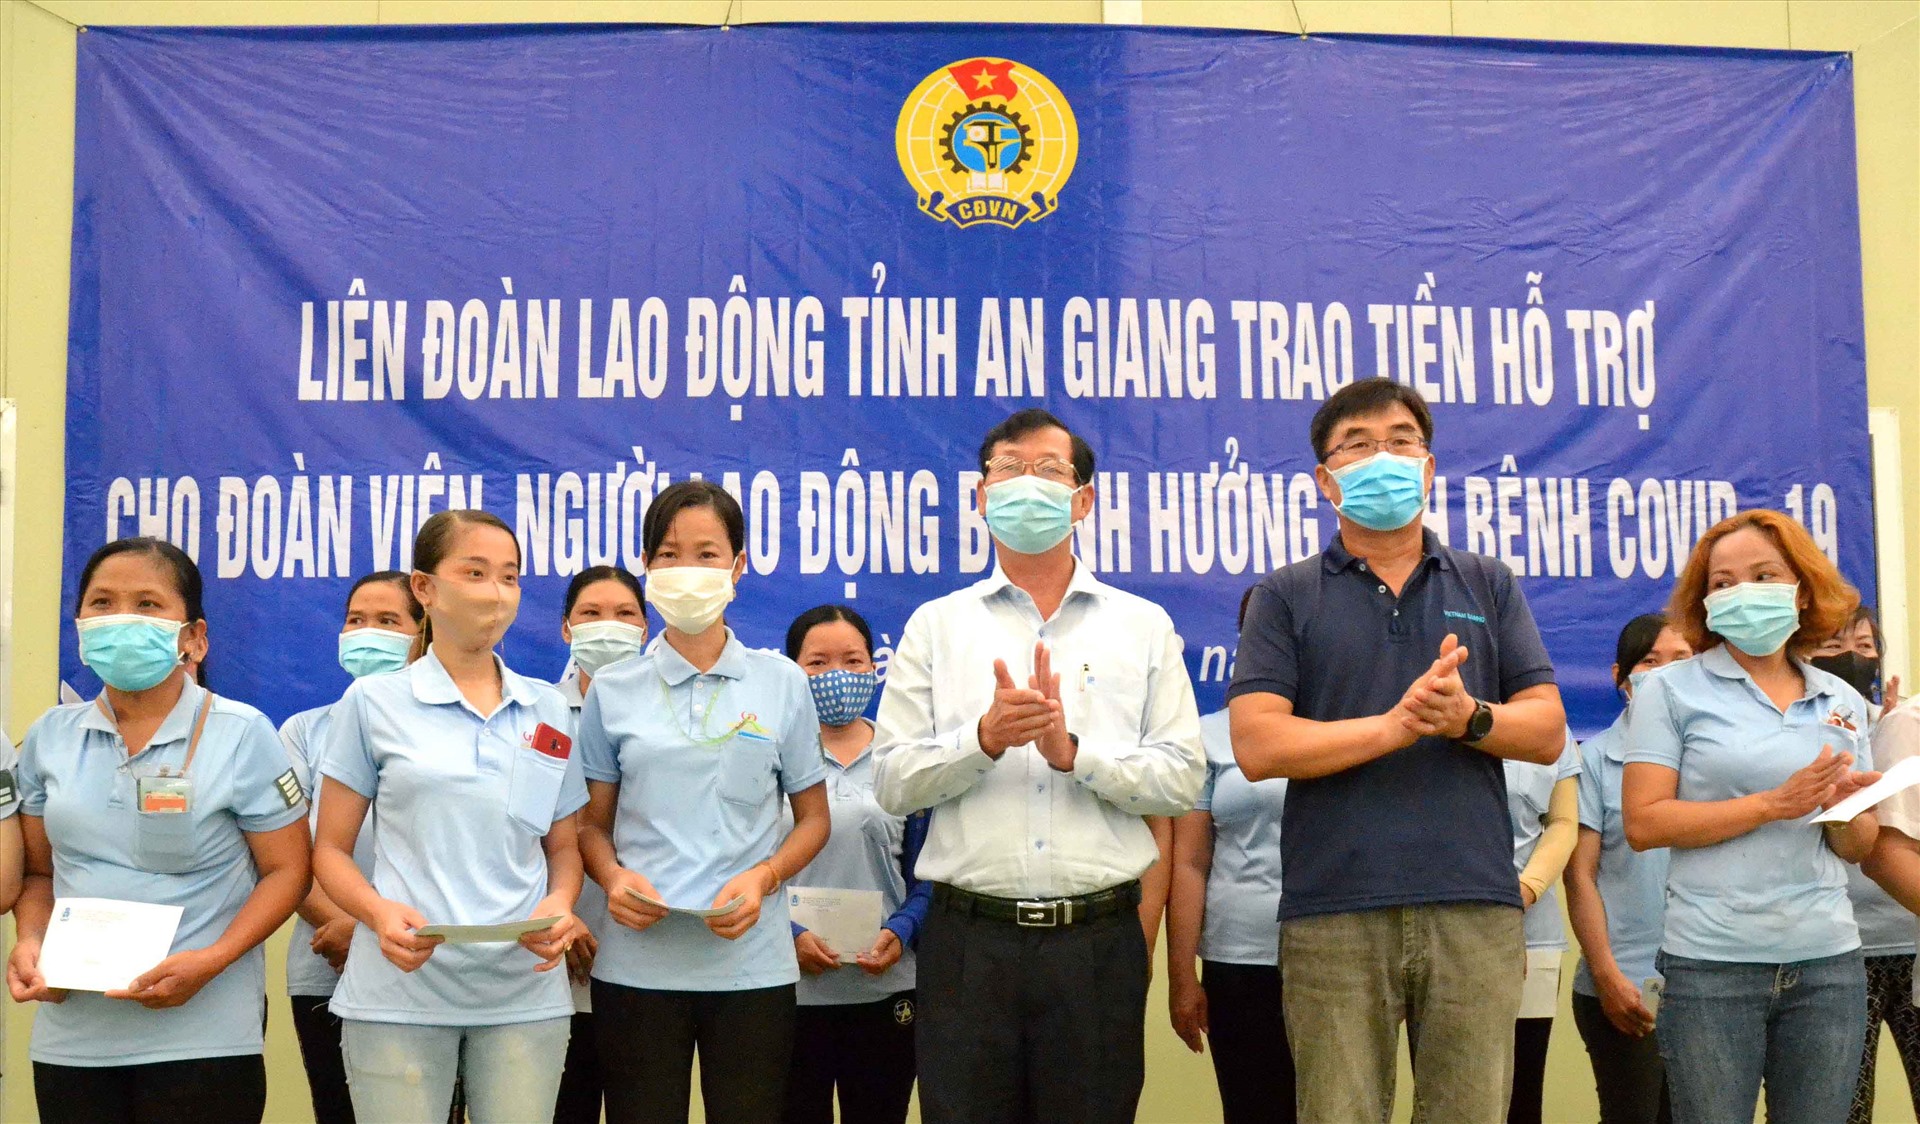 Phó Chủ tịch UBND tỉnh An Giang Lê Văn Phước trao hỗ trợ đoàn viên tại Khu công nghiệp Bình Hòa. Ảnh: Lâm Điền